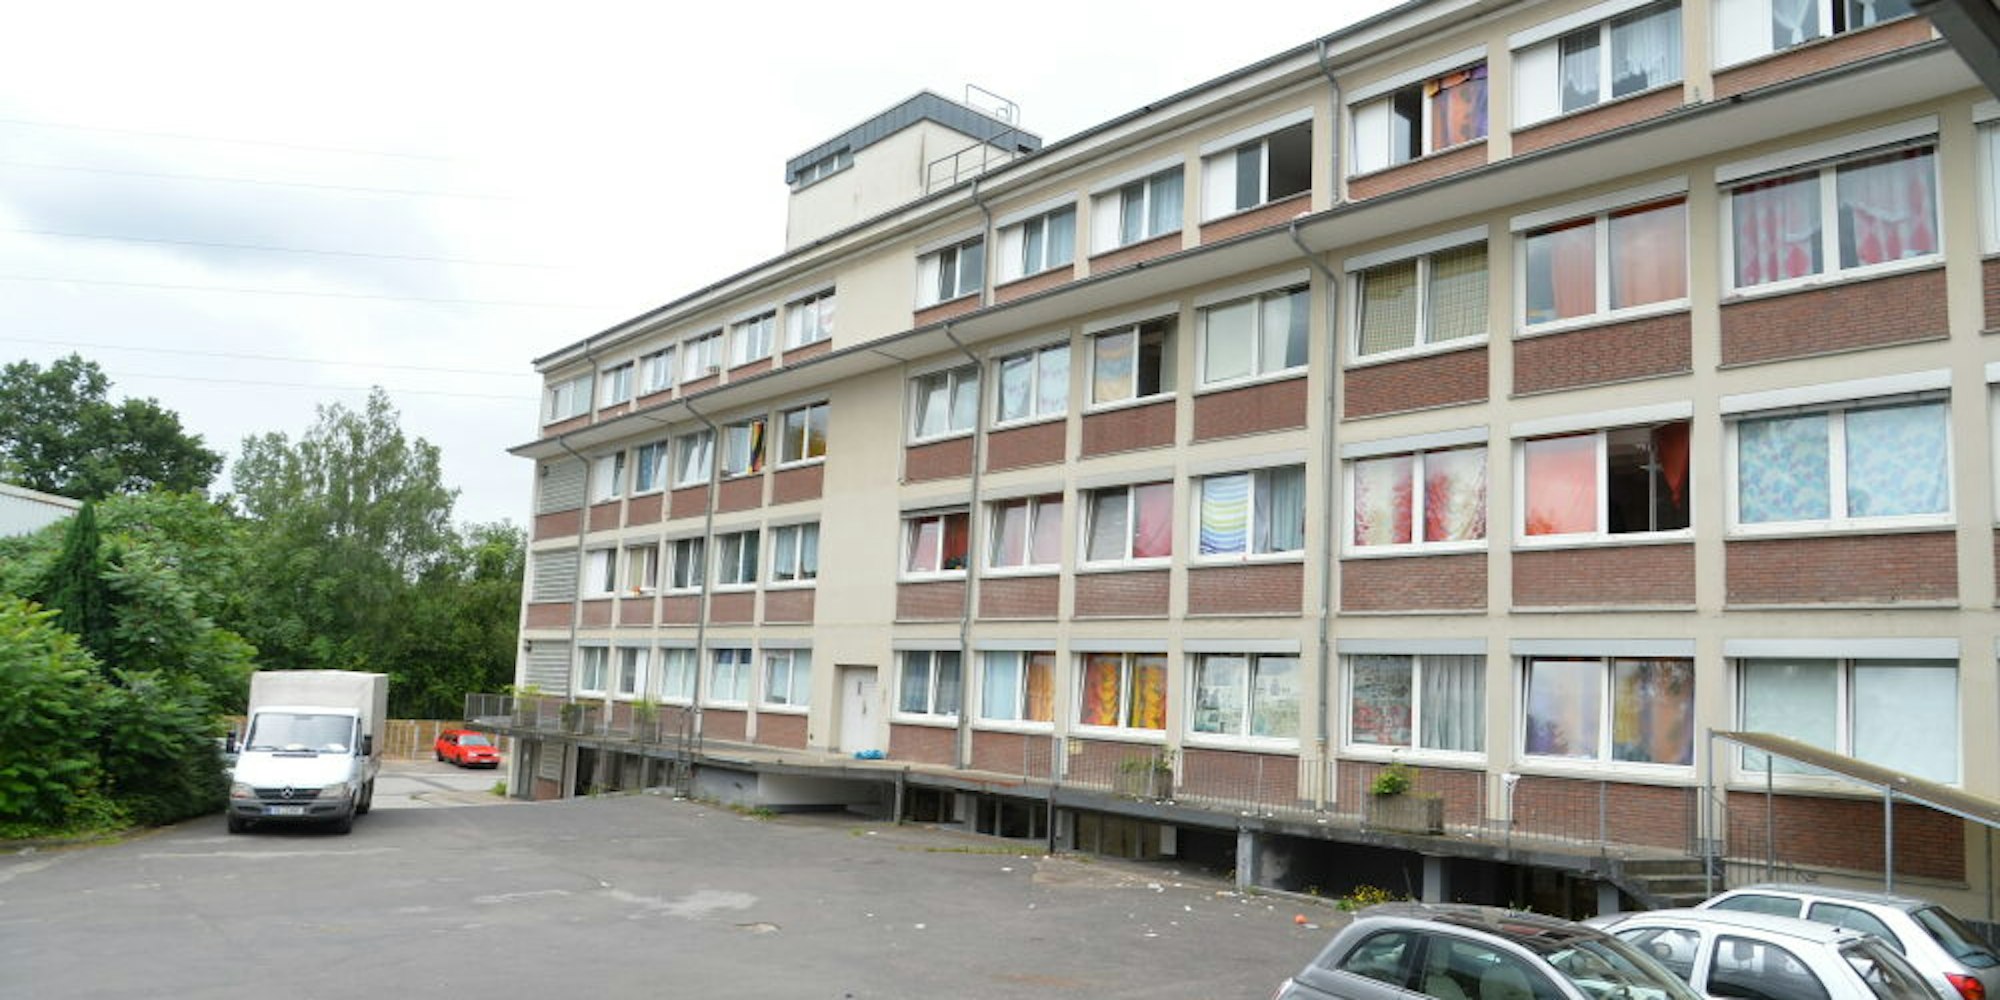 Die Stadtverwaltung nutzt seit Jahren das Gustav-Lübbe-Haus in Heidkamp, um Arbeitsplätze unterzubringen. Dort leben auch Flüchtlinge. Das neue Bürogebäude liegt in der Nähe.